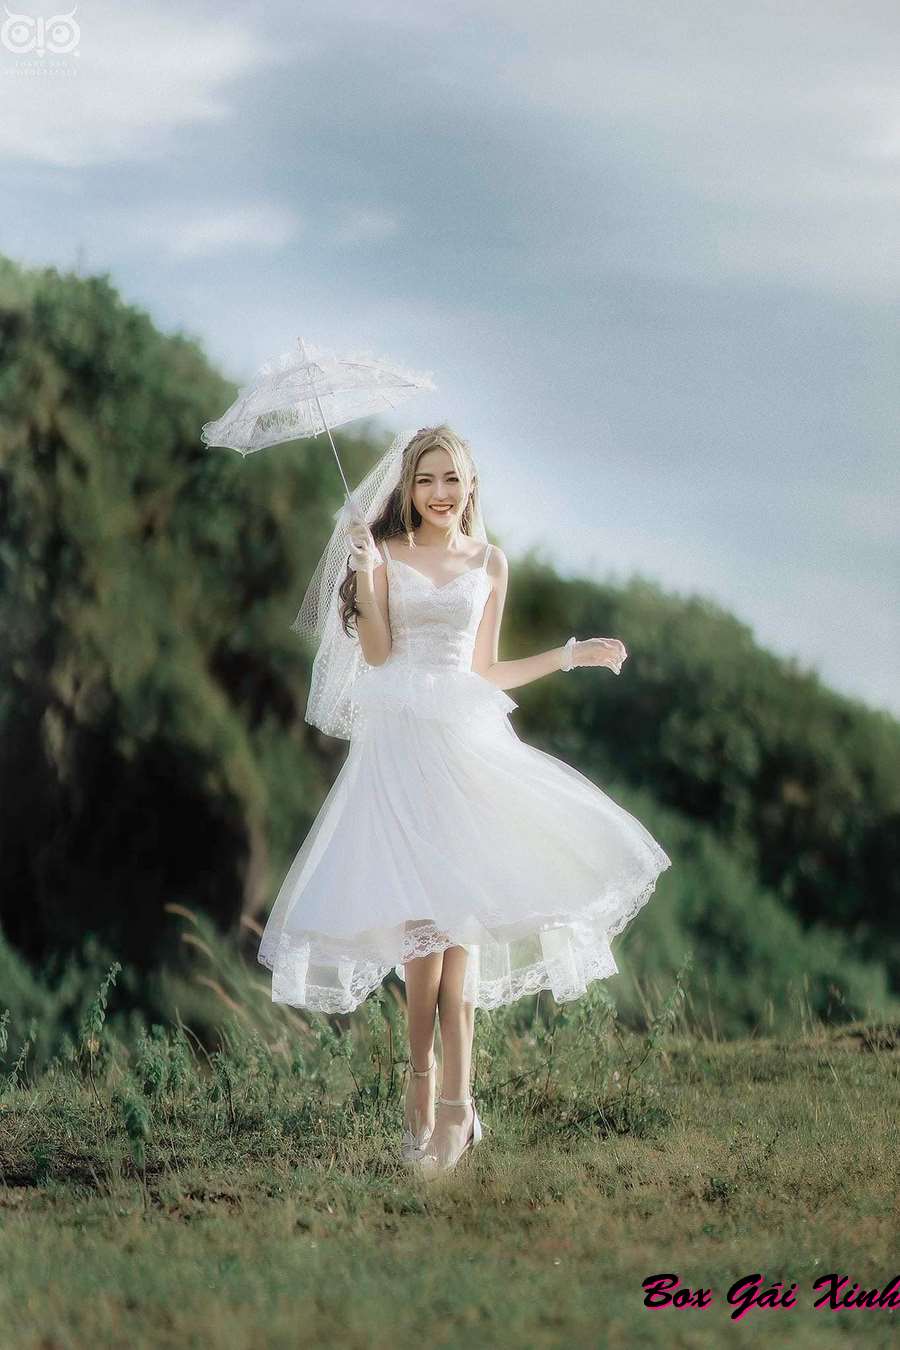 Hình ảnh Trần Thanh Tâm diện váy cô dâu trên đồng cỏ